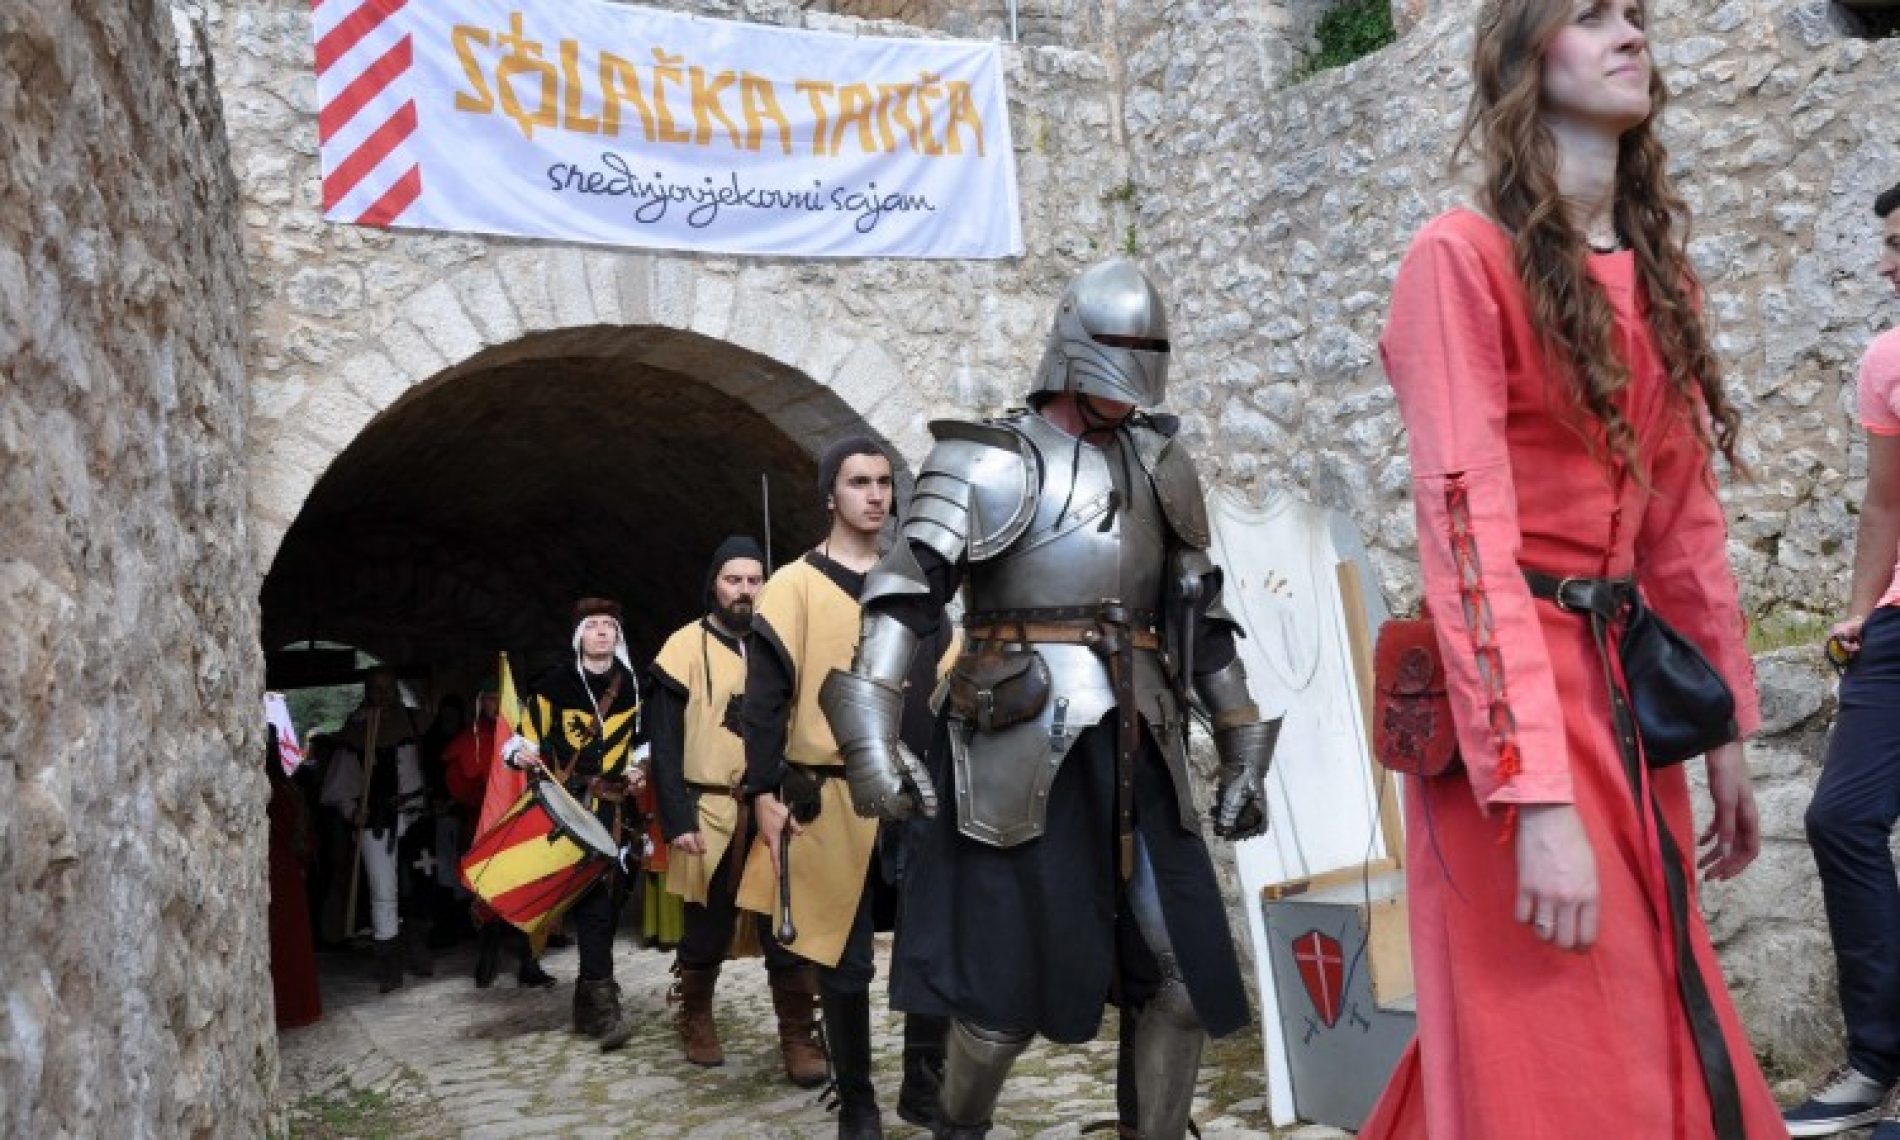 Otvorena Stolačka tarča, jedini srdnjovjekovni sajam u Bosni i Hercegovini